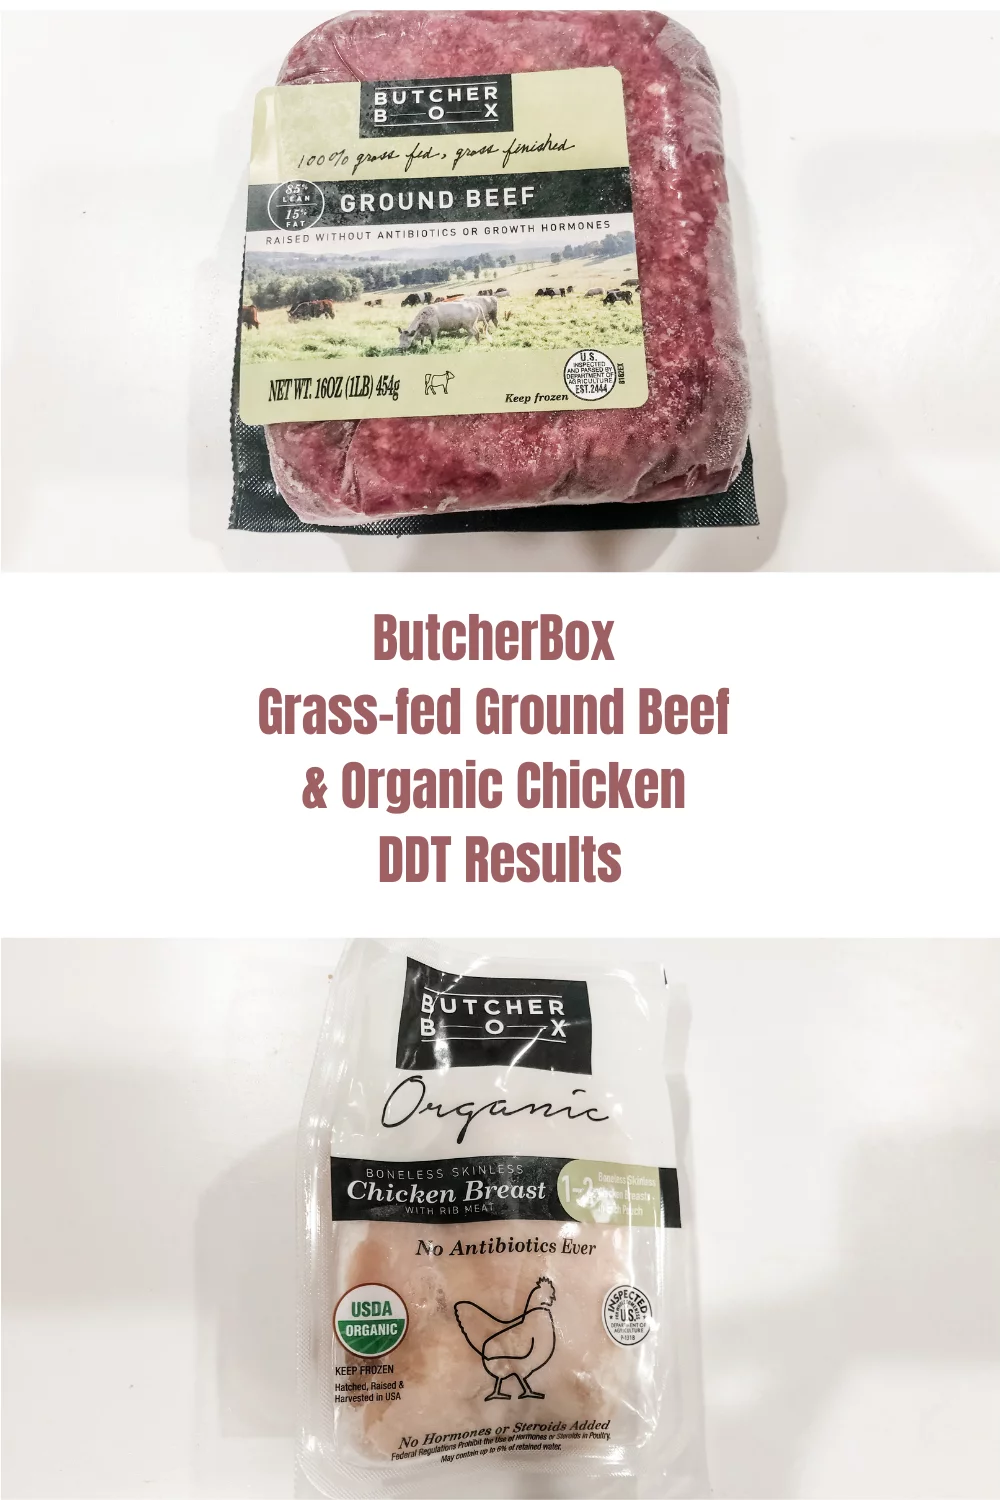 DDT Testing of ButcherBox Organic Chicken & Ground Beef 1